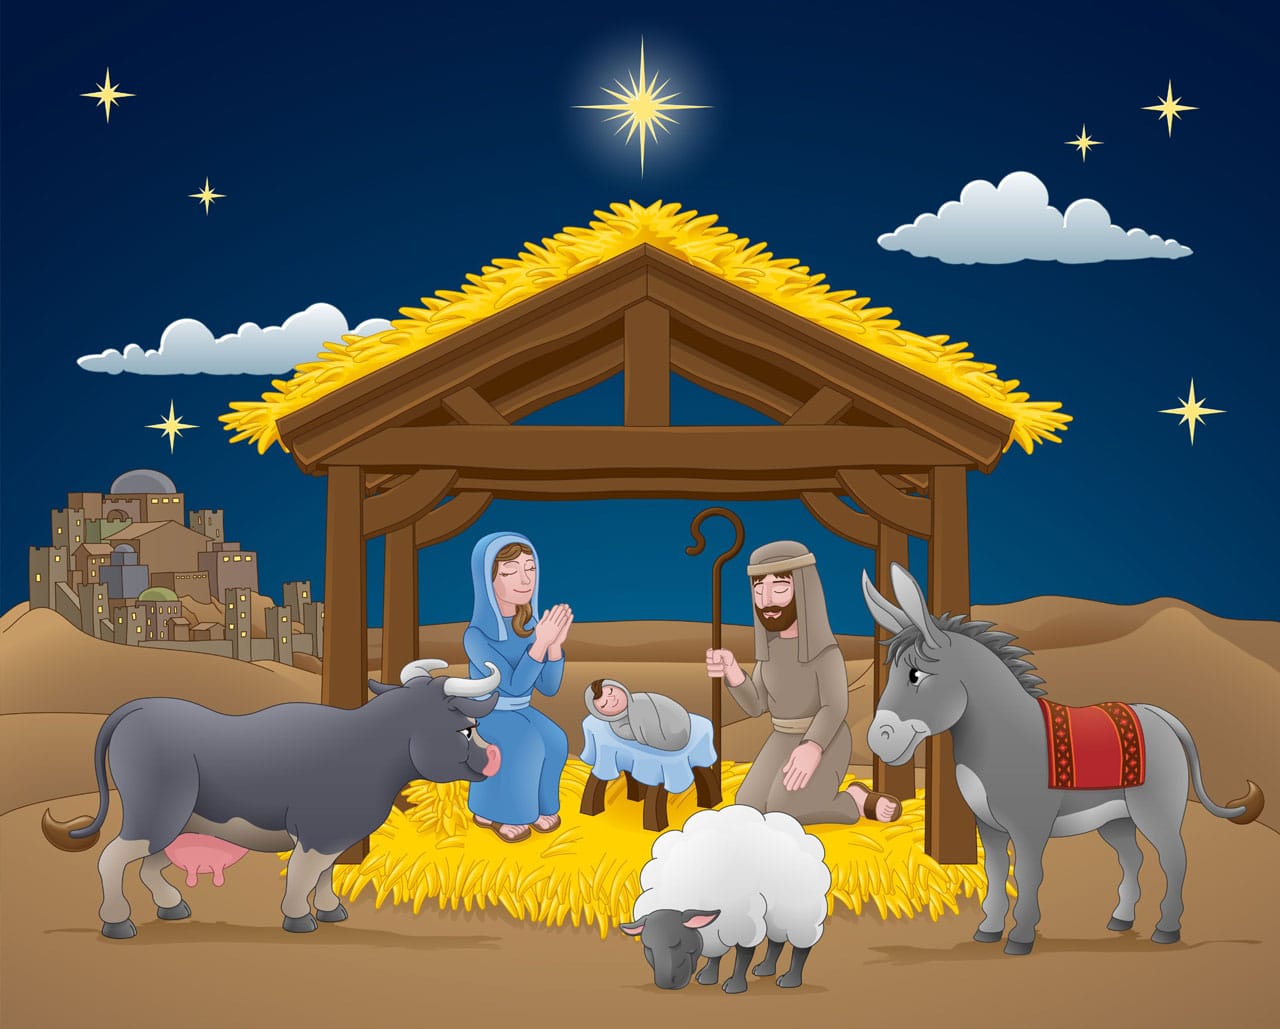 El nacimiento del niño Jesús, un bonito cuento de Navidad para contarles a los niños